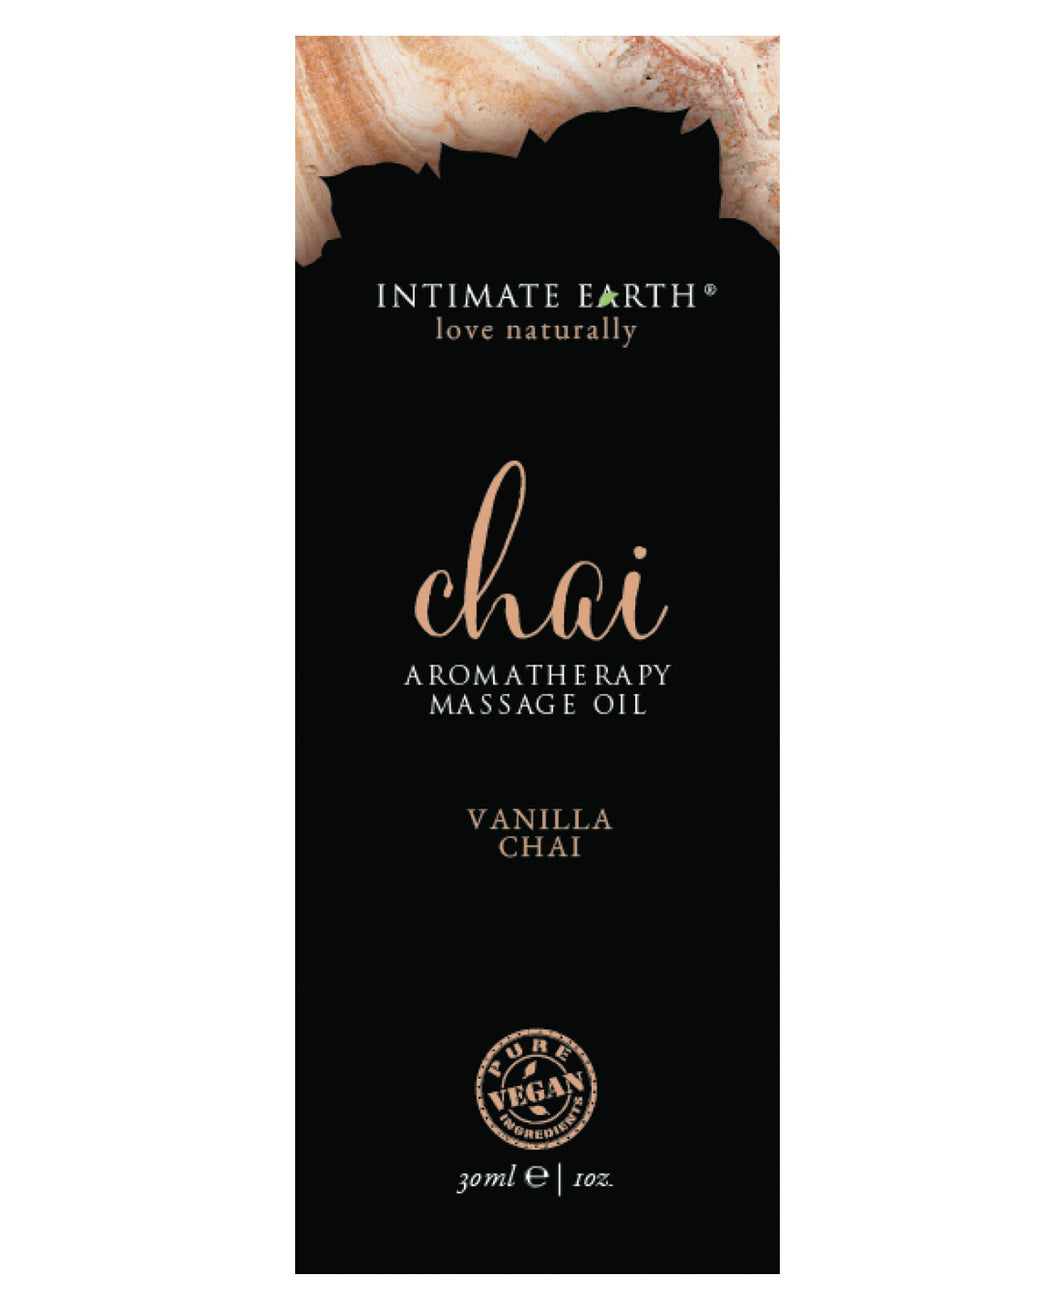 Intimate Earth Chai Massage Oil Foil - 30ml